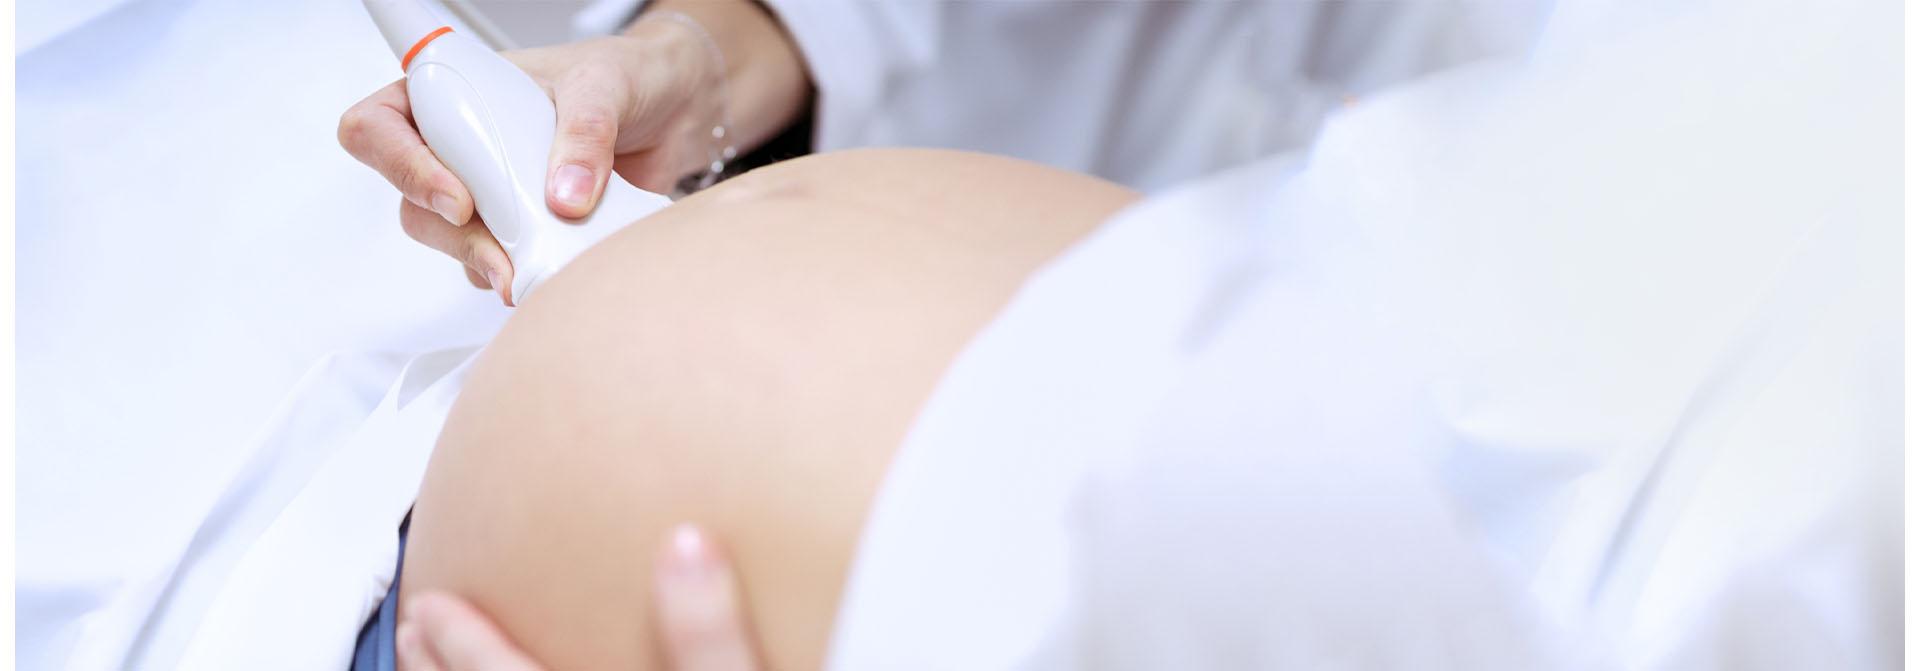 USG kobiety w ciąży - Slajd #2